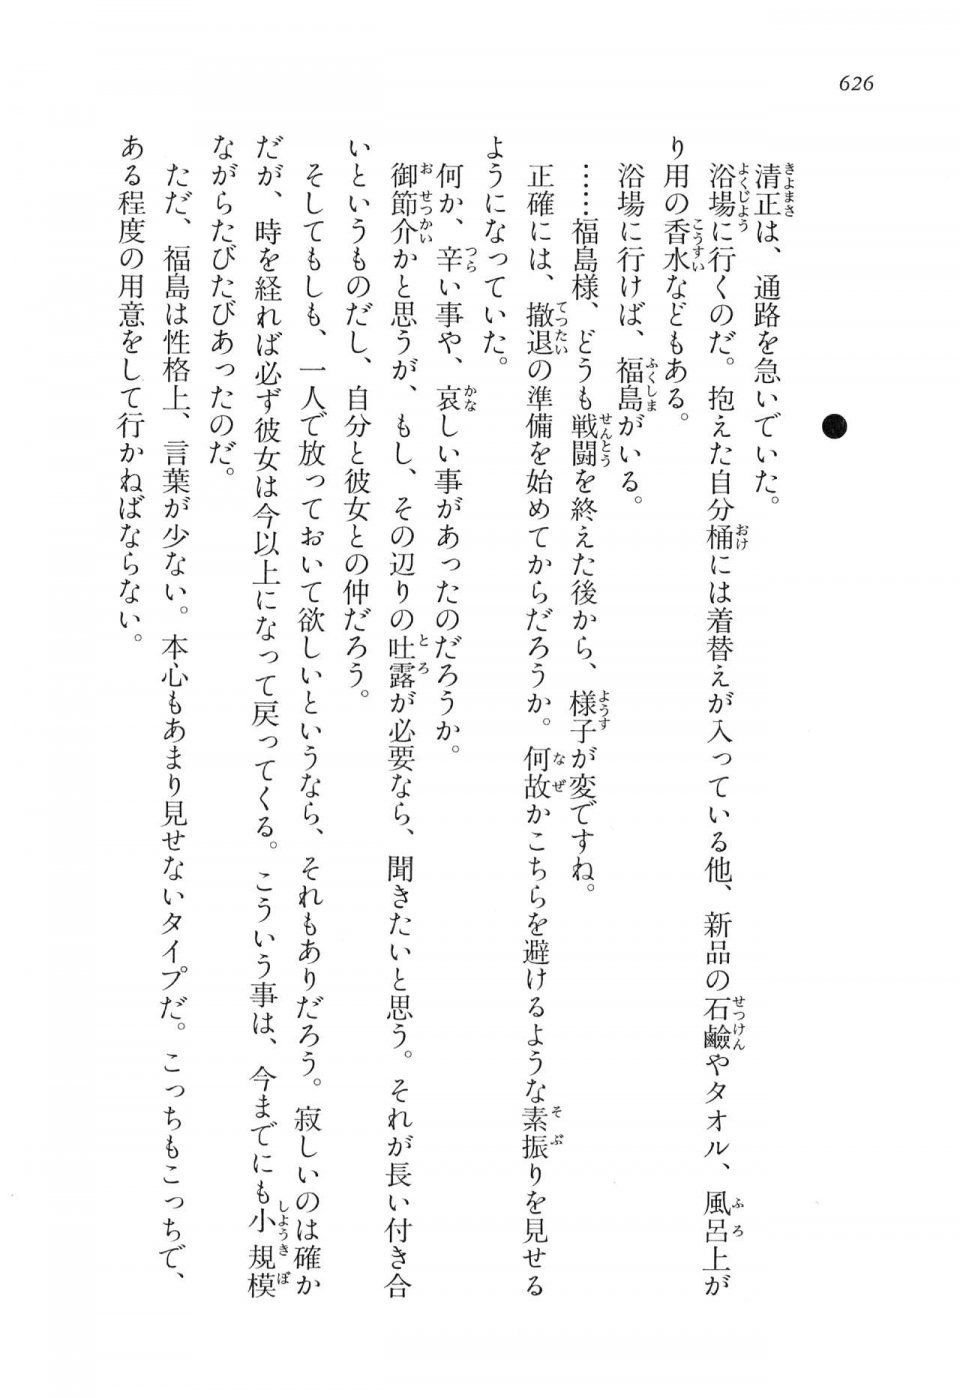 Kyoukai Senjou no Horizon LN Vol 16(7A) - Photo #626